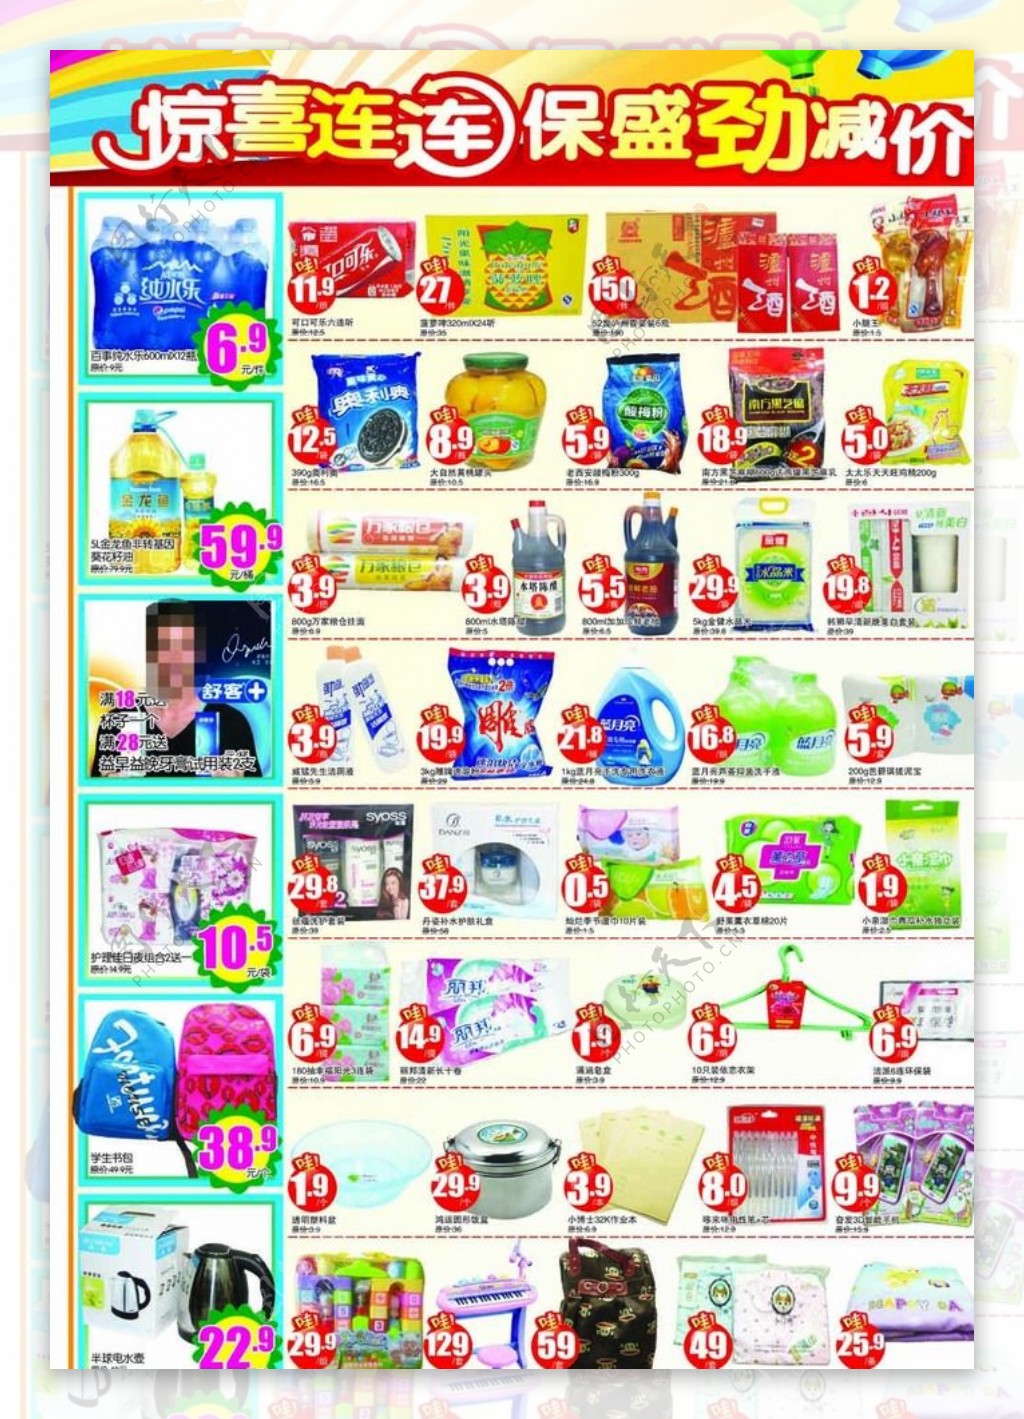 超市单品促销活动彩页图片